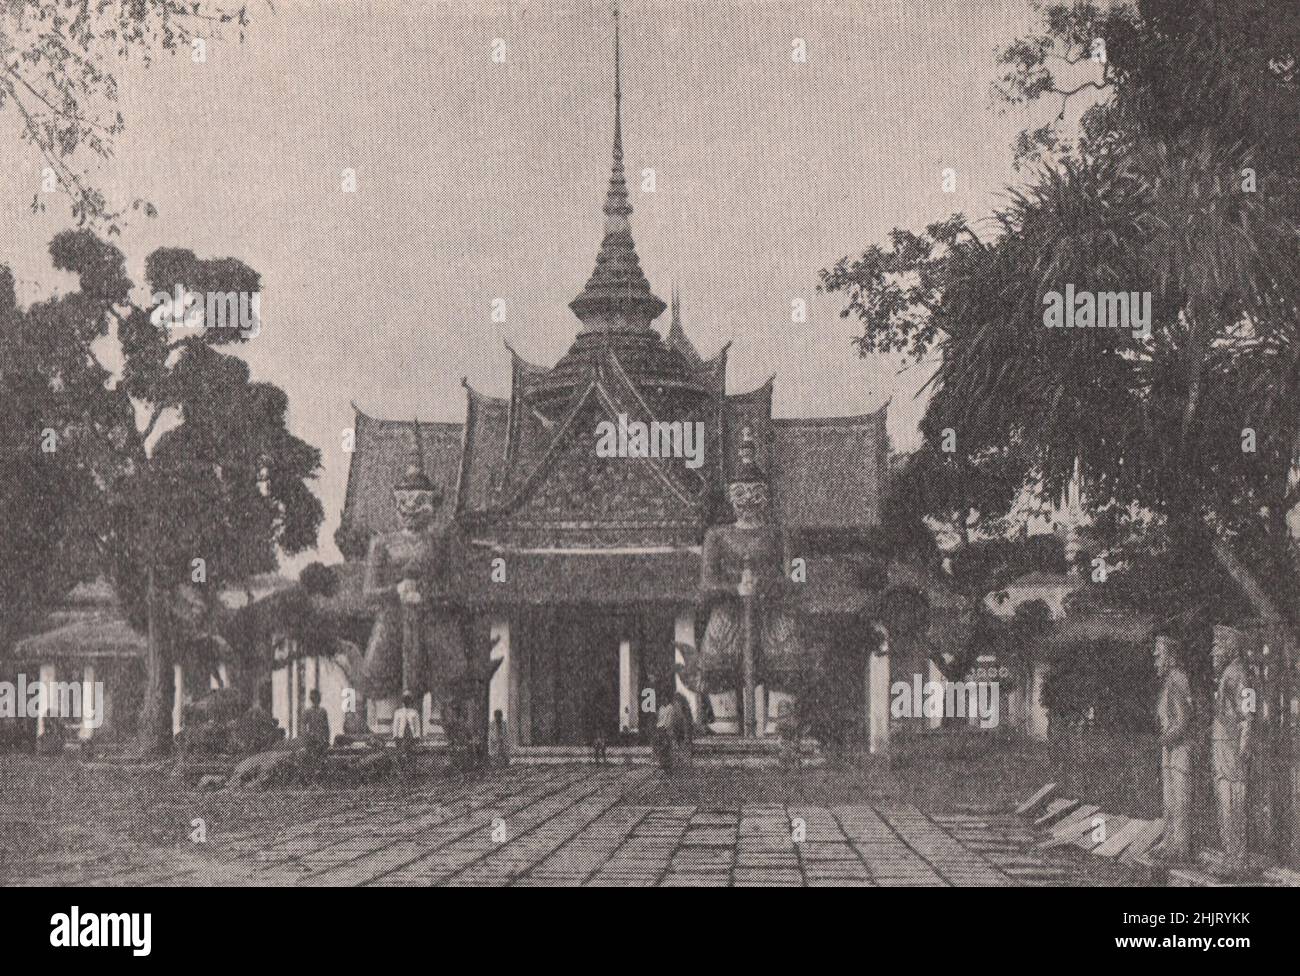 Des figures géantes qui gardaient la porte de Wat Chang. Thaïlande. Siam (1923) Banque D'Images